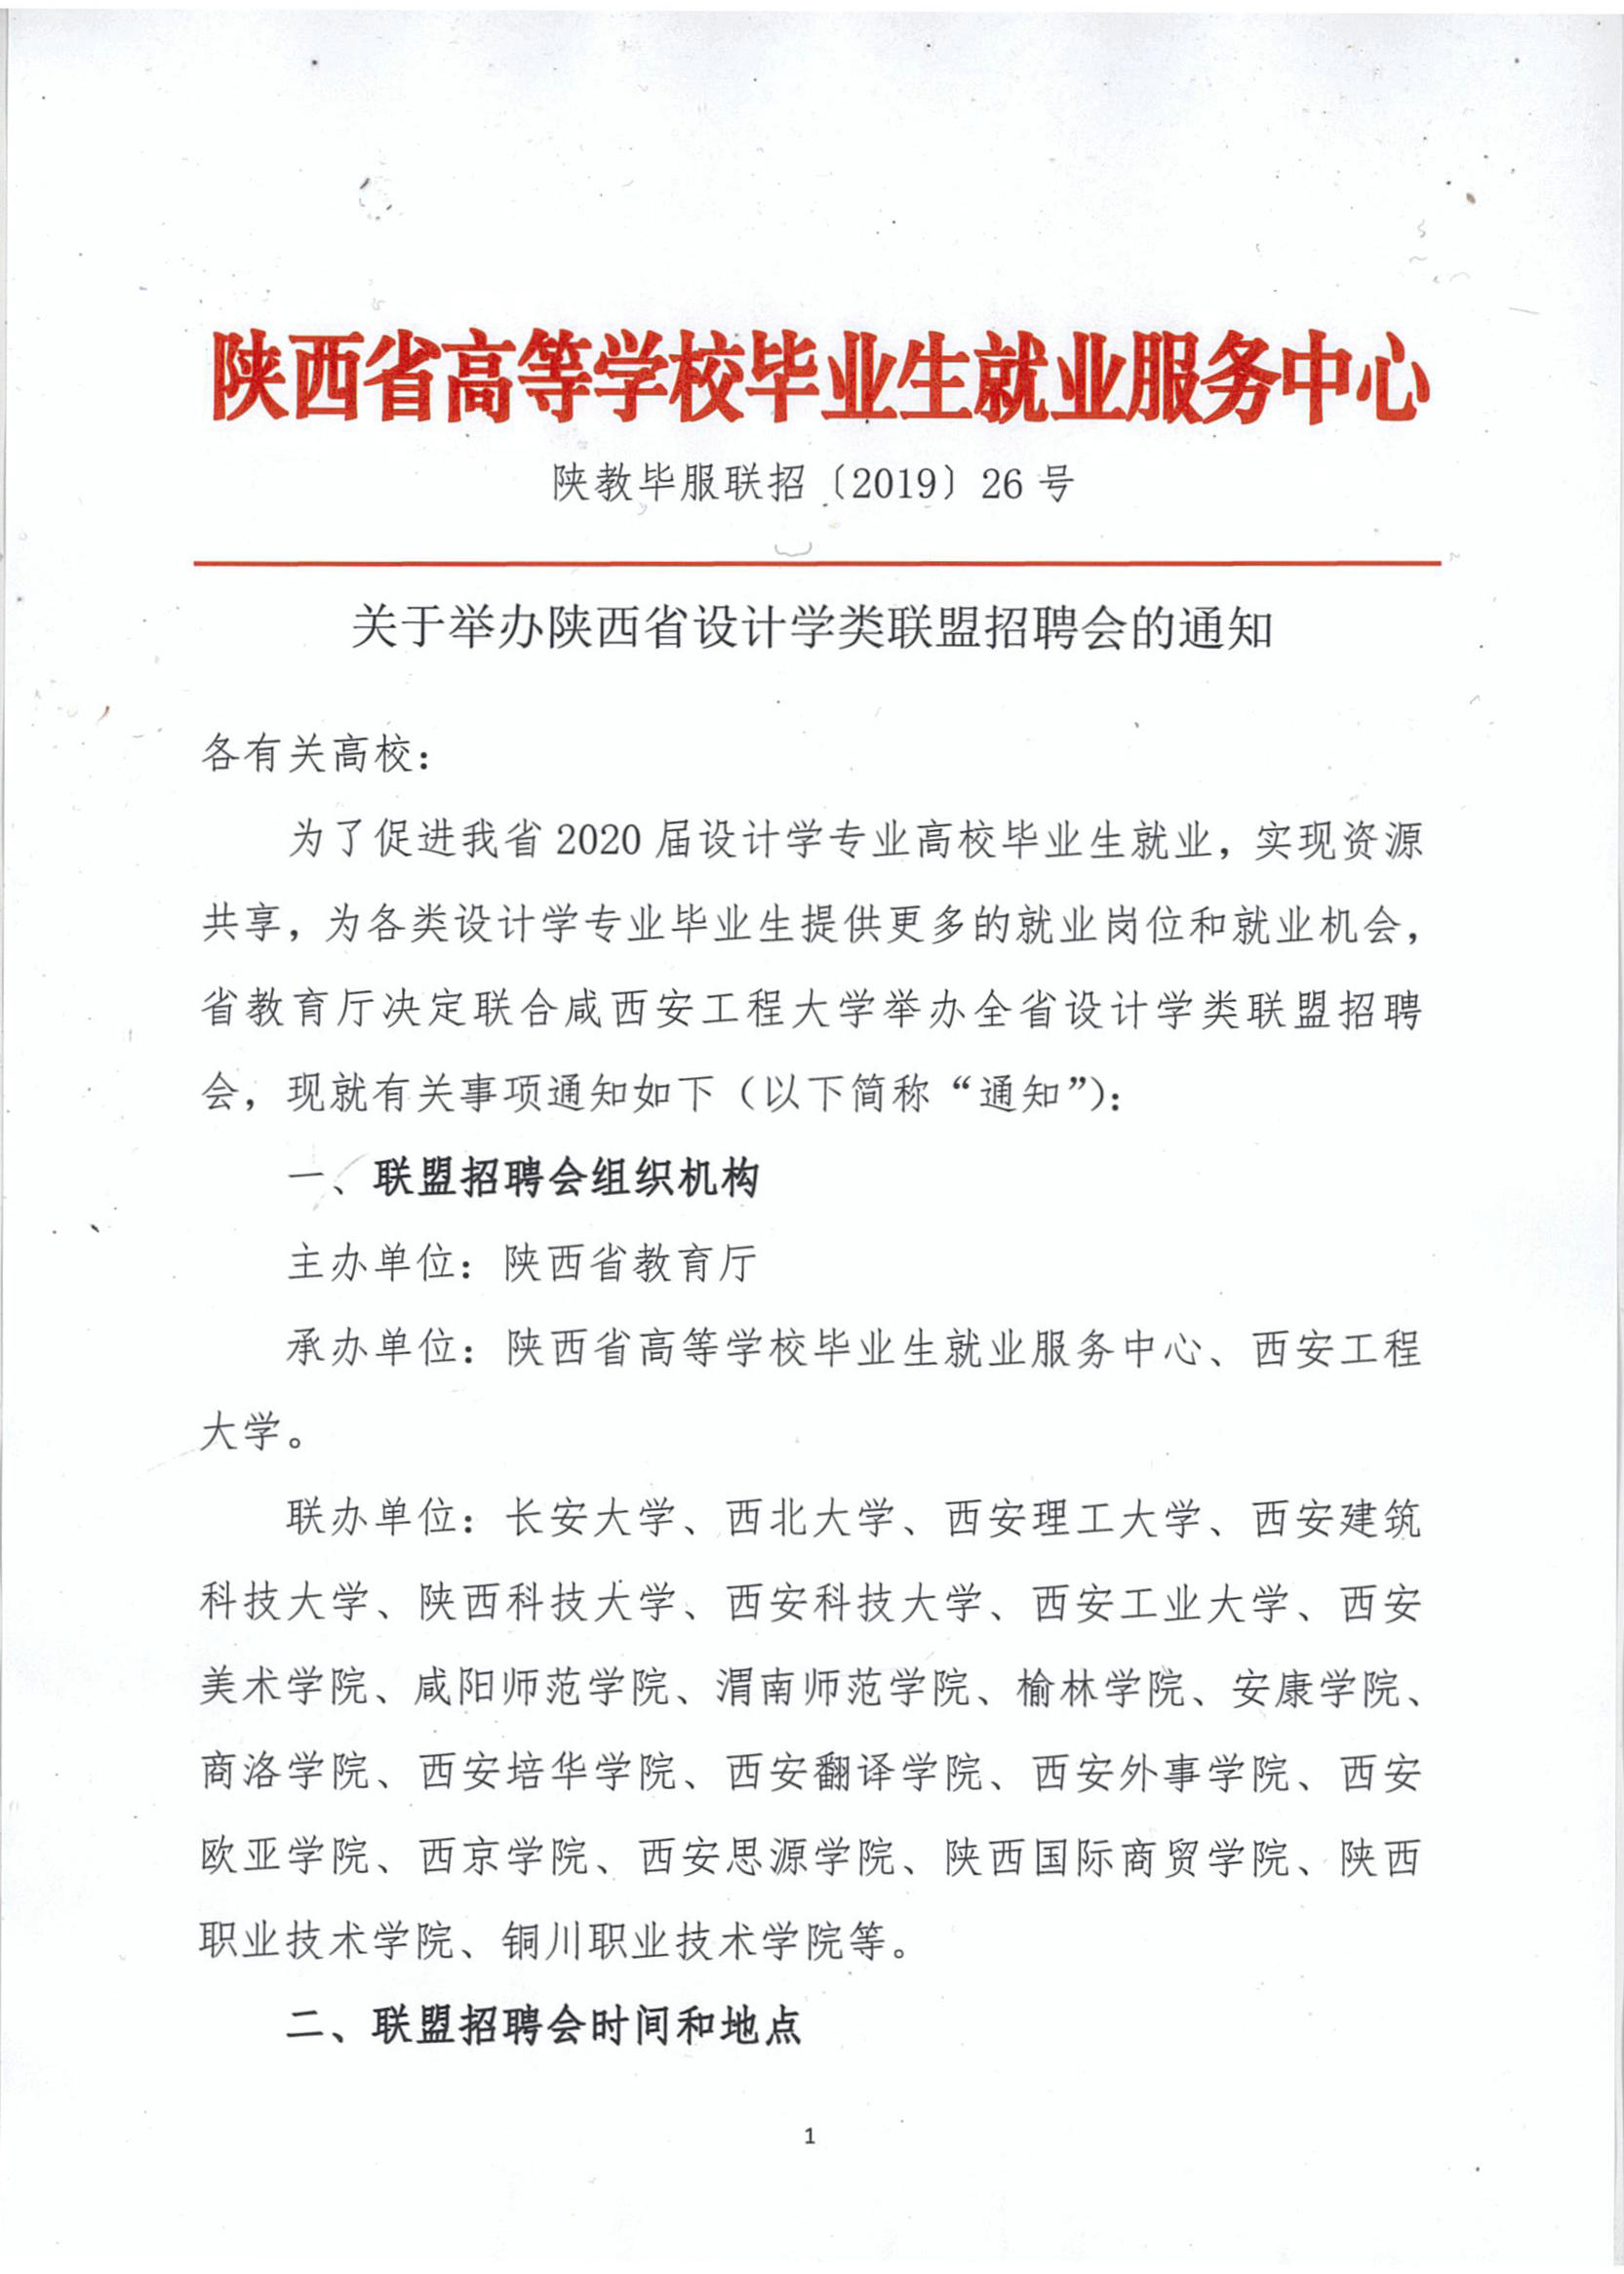 关于举办陕西省设计学类联盟招聘会的通知(1).jpg